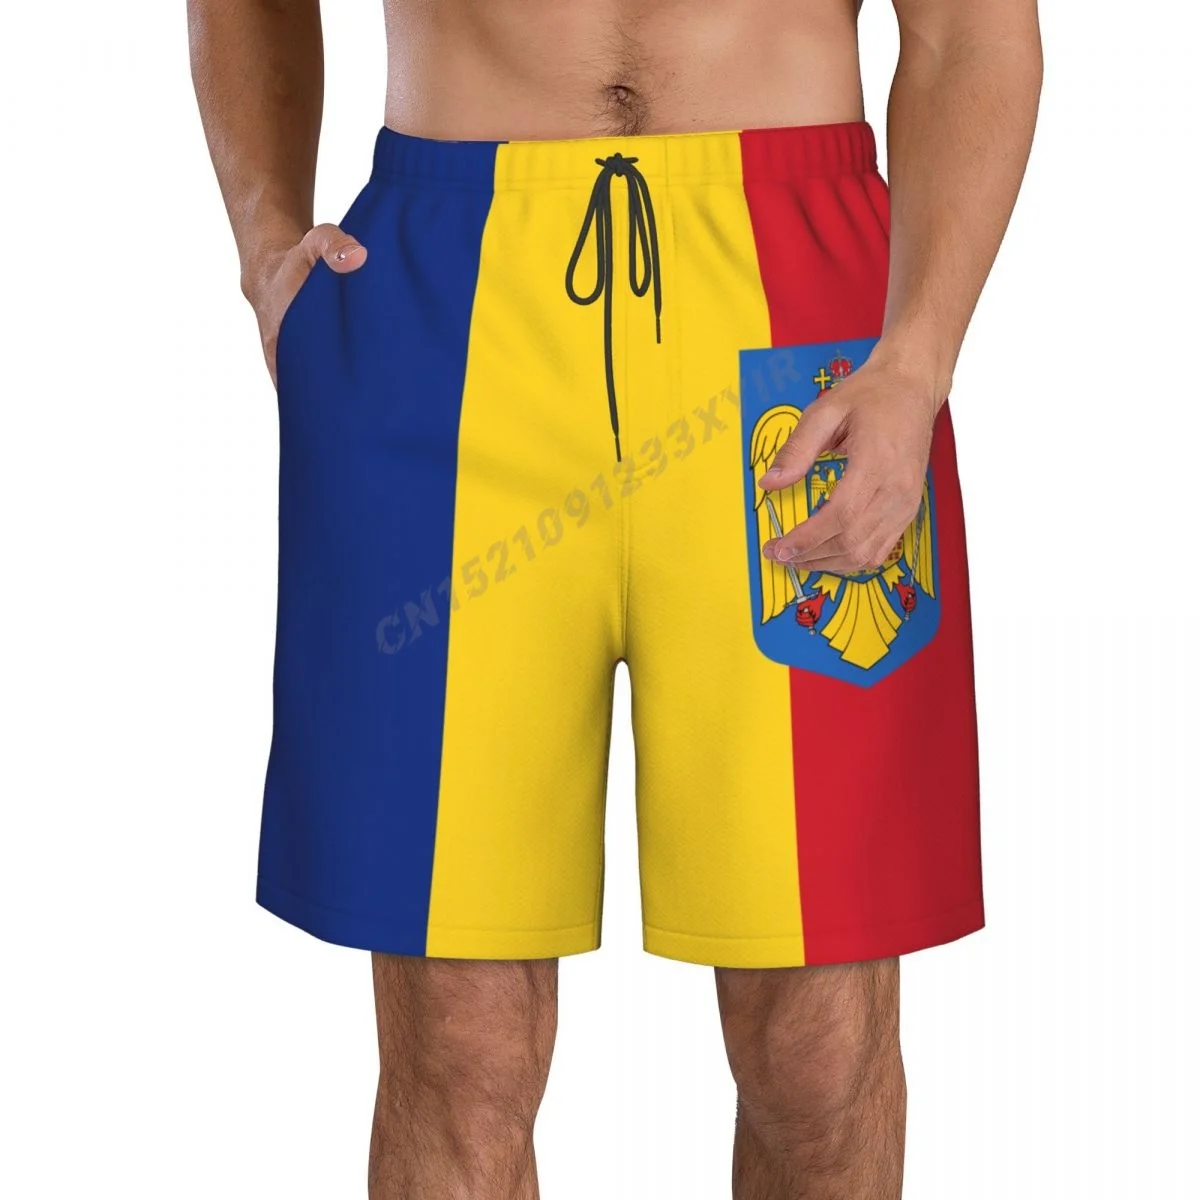 

Летний мужской флаг с эмблемой Румынии, Фотофон для серфинга, купальник из полиэстера для бега